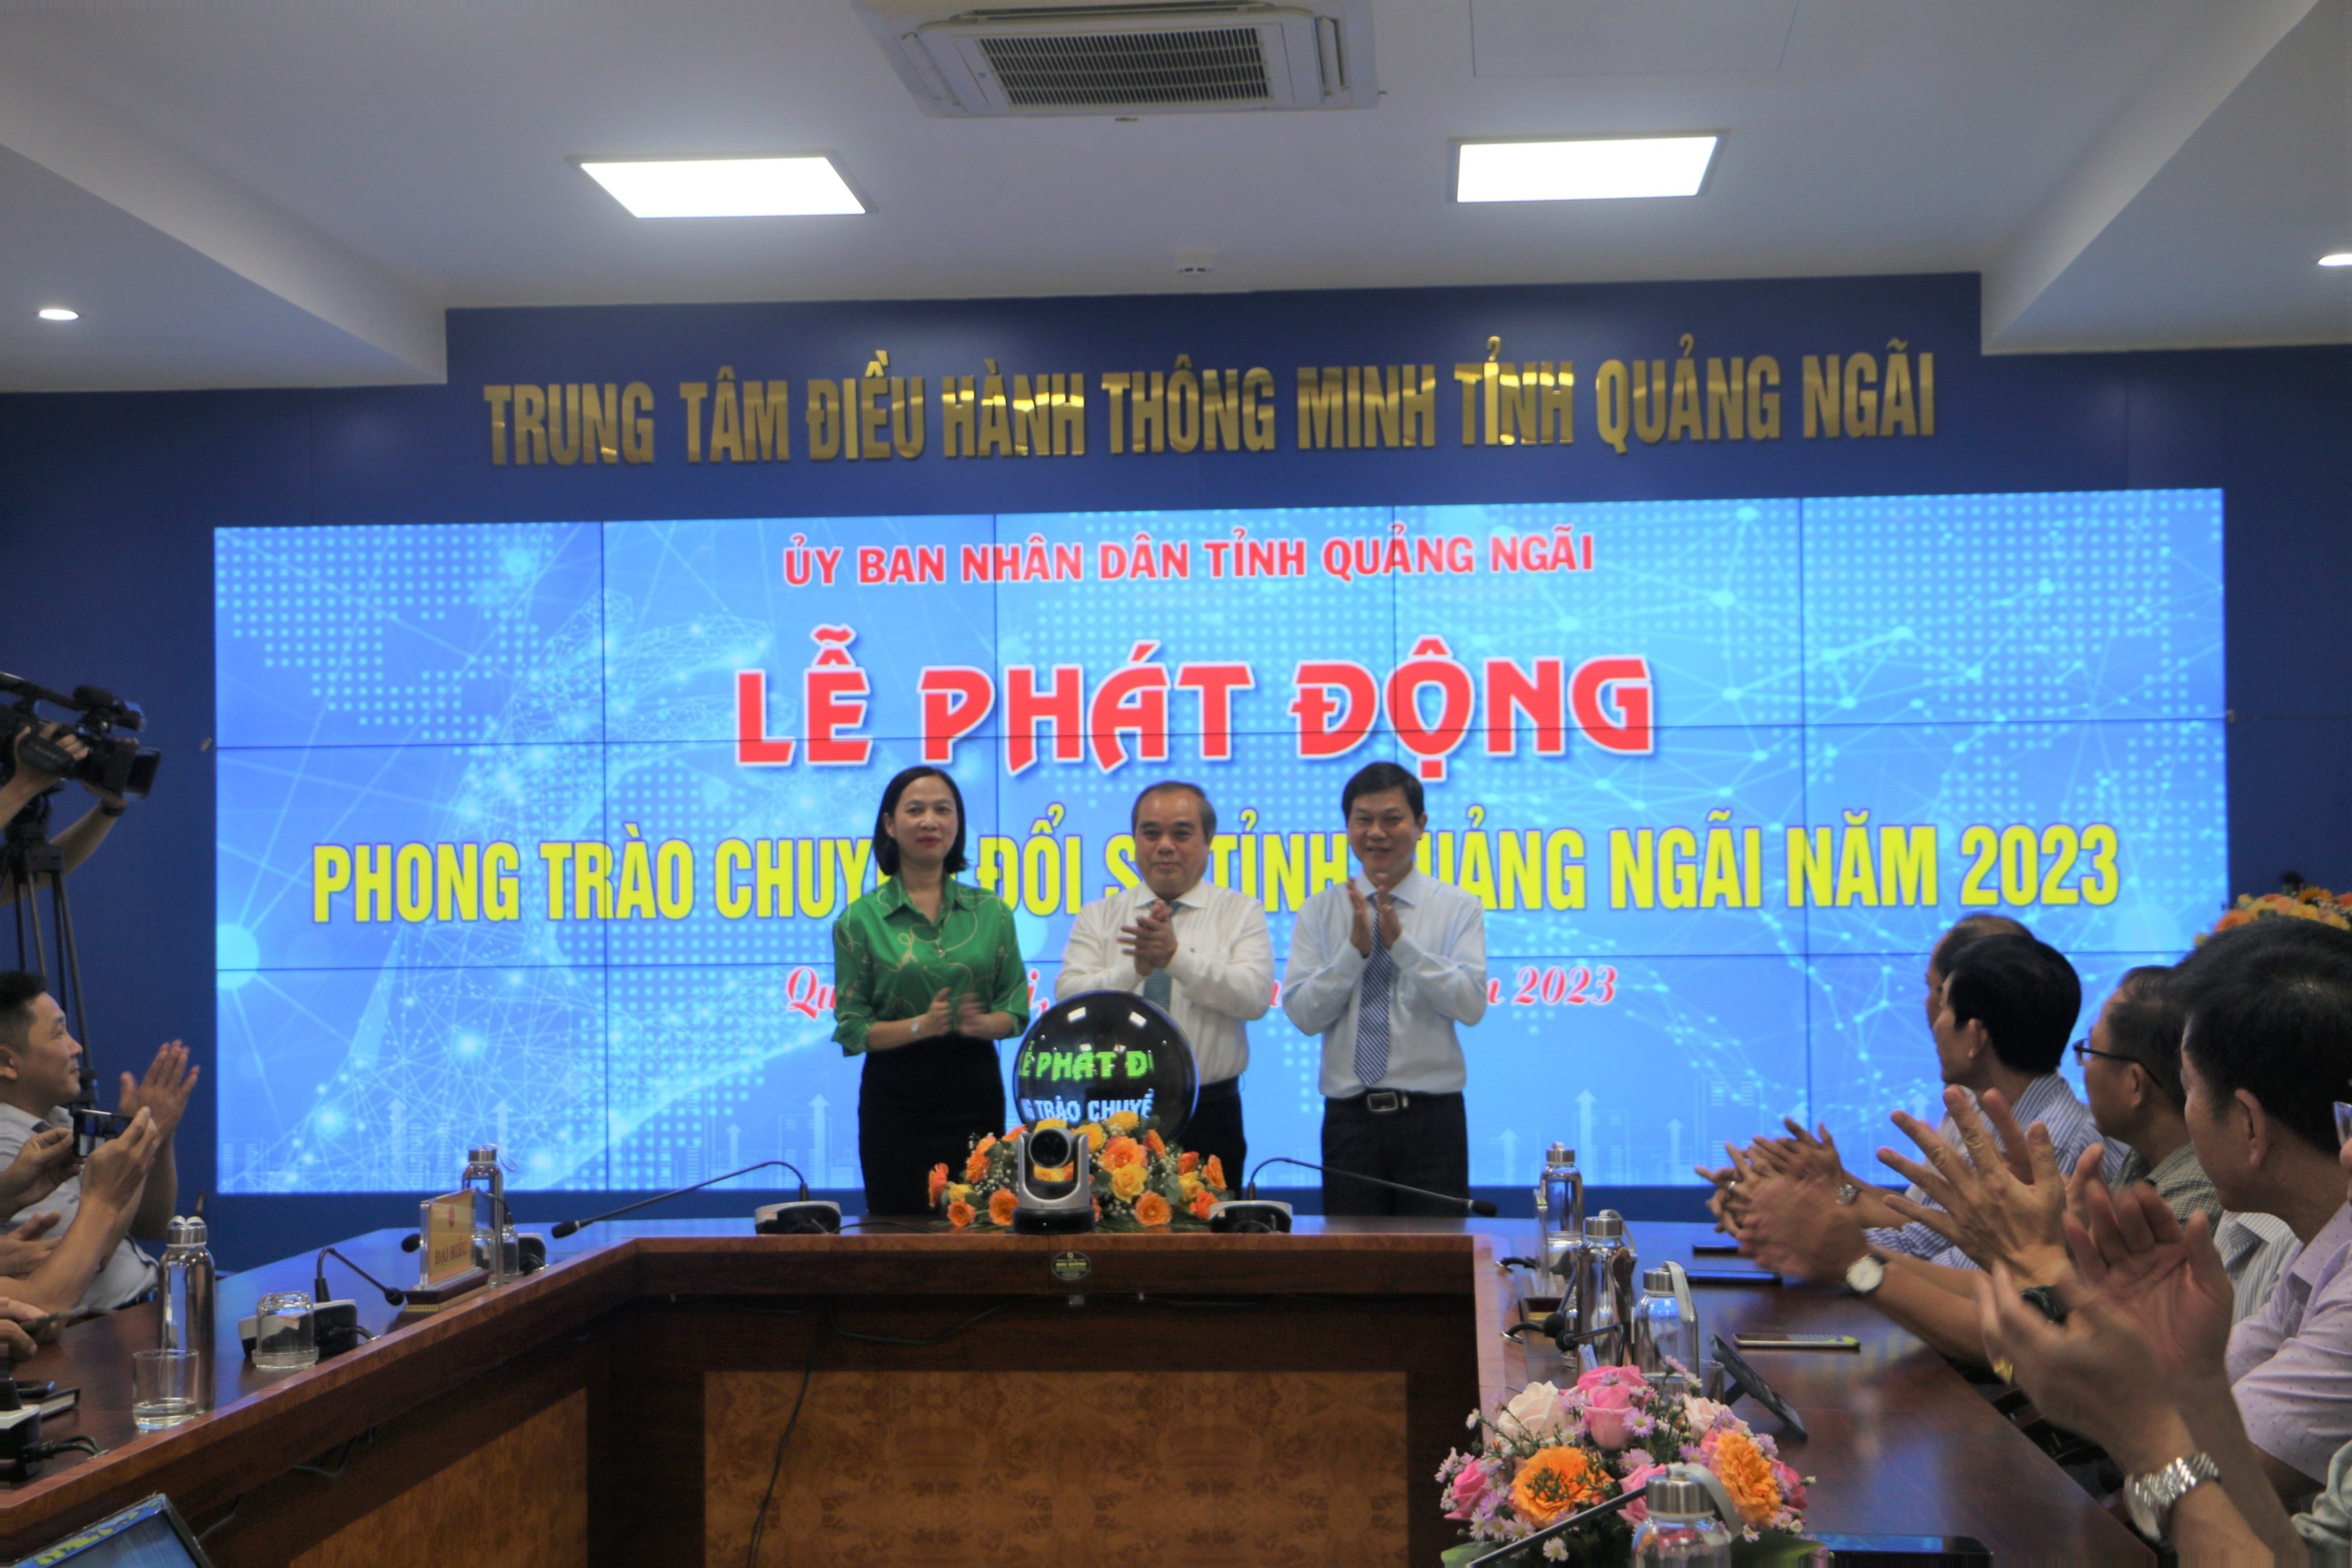 Nghị quyết về chuyển đổi số tỉnh Quảng Ngãi đến năm 2025, định hướng đến năm 2023